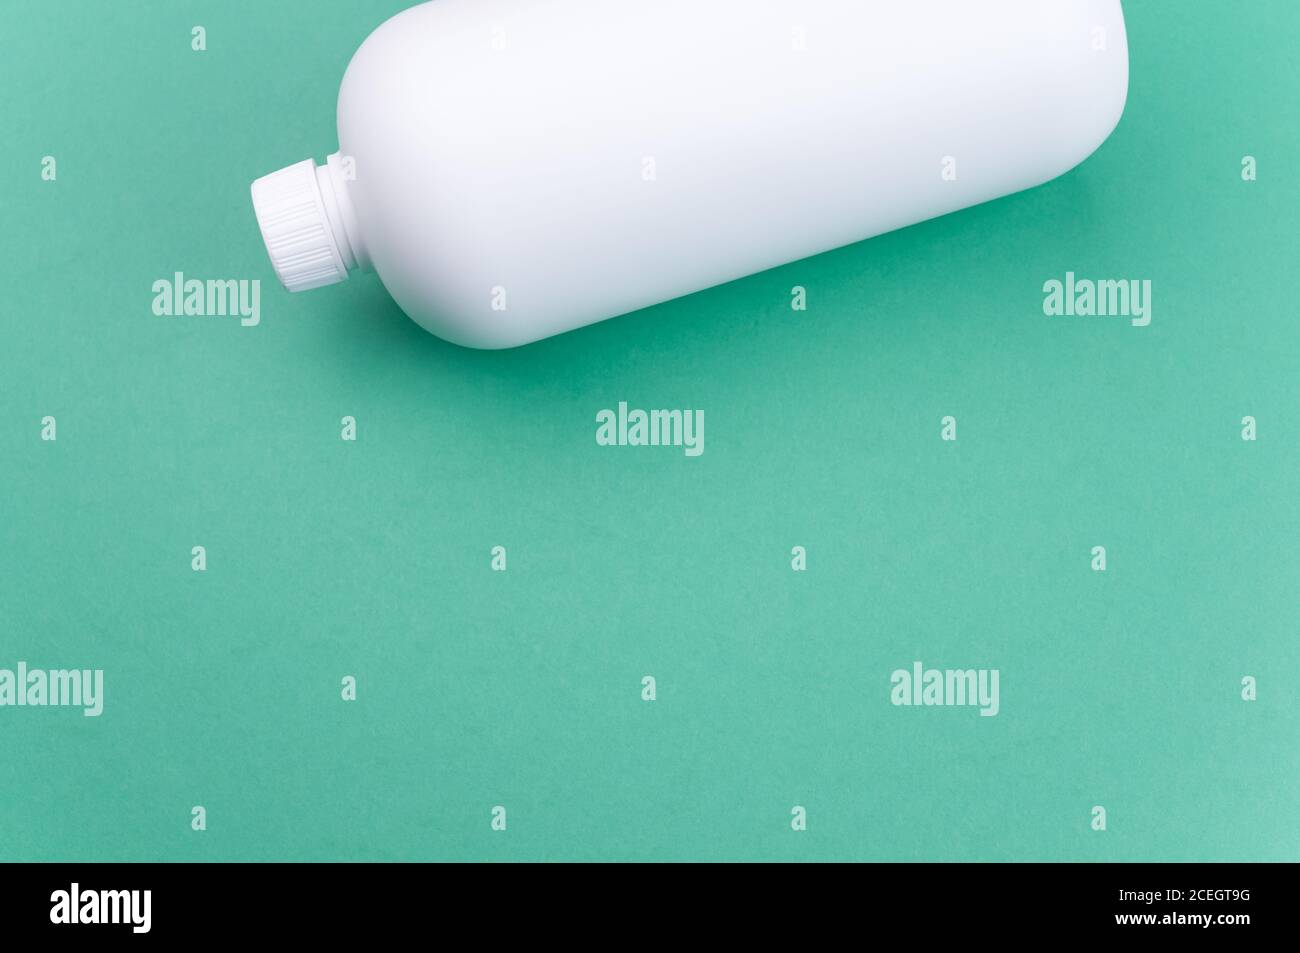 Nahaufnahme eines weißen Plastikbehälters auf einem grünen Oberfläche Stockfoto